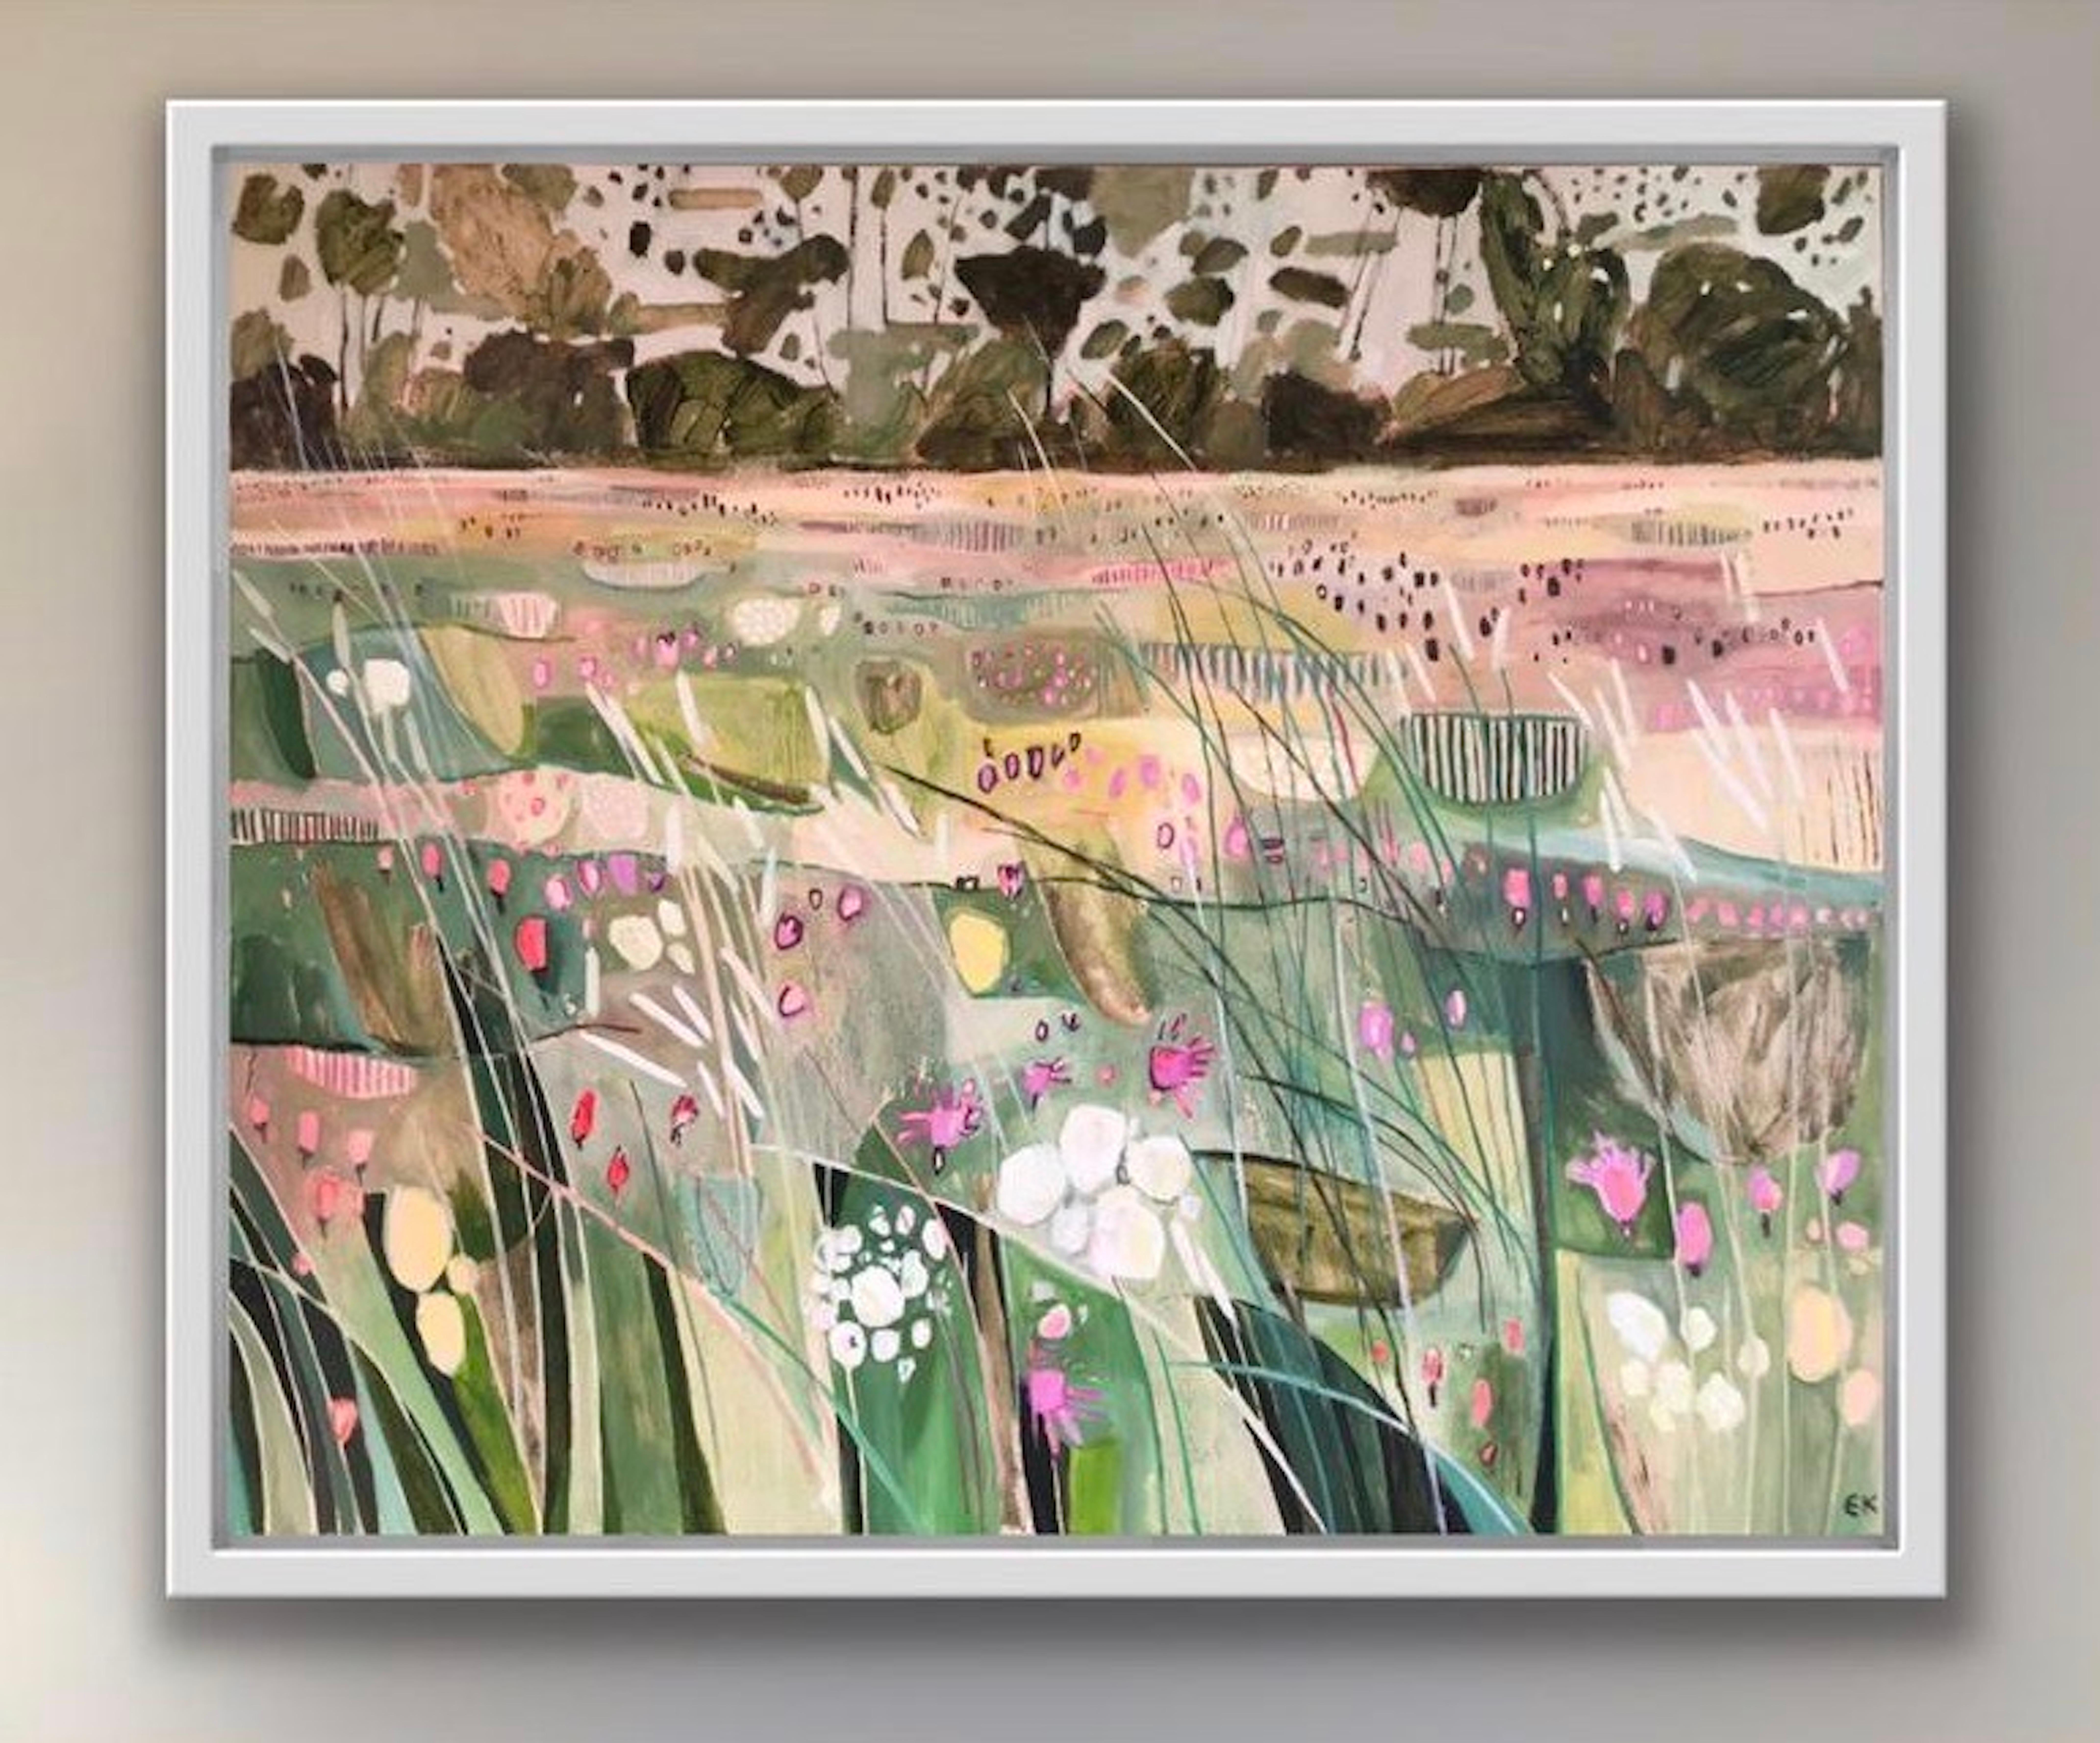 La prairie de Hinksey avec grands gazons, paysage, fleurs, Oxford, cotswolds, prairies - Painting de Elaine Kazimierczuk